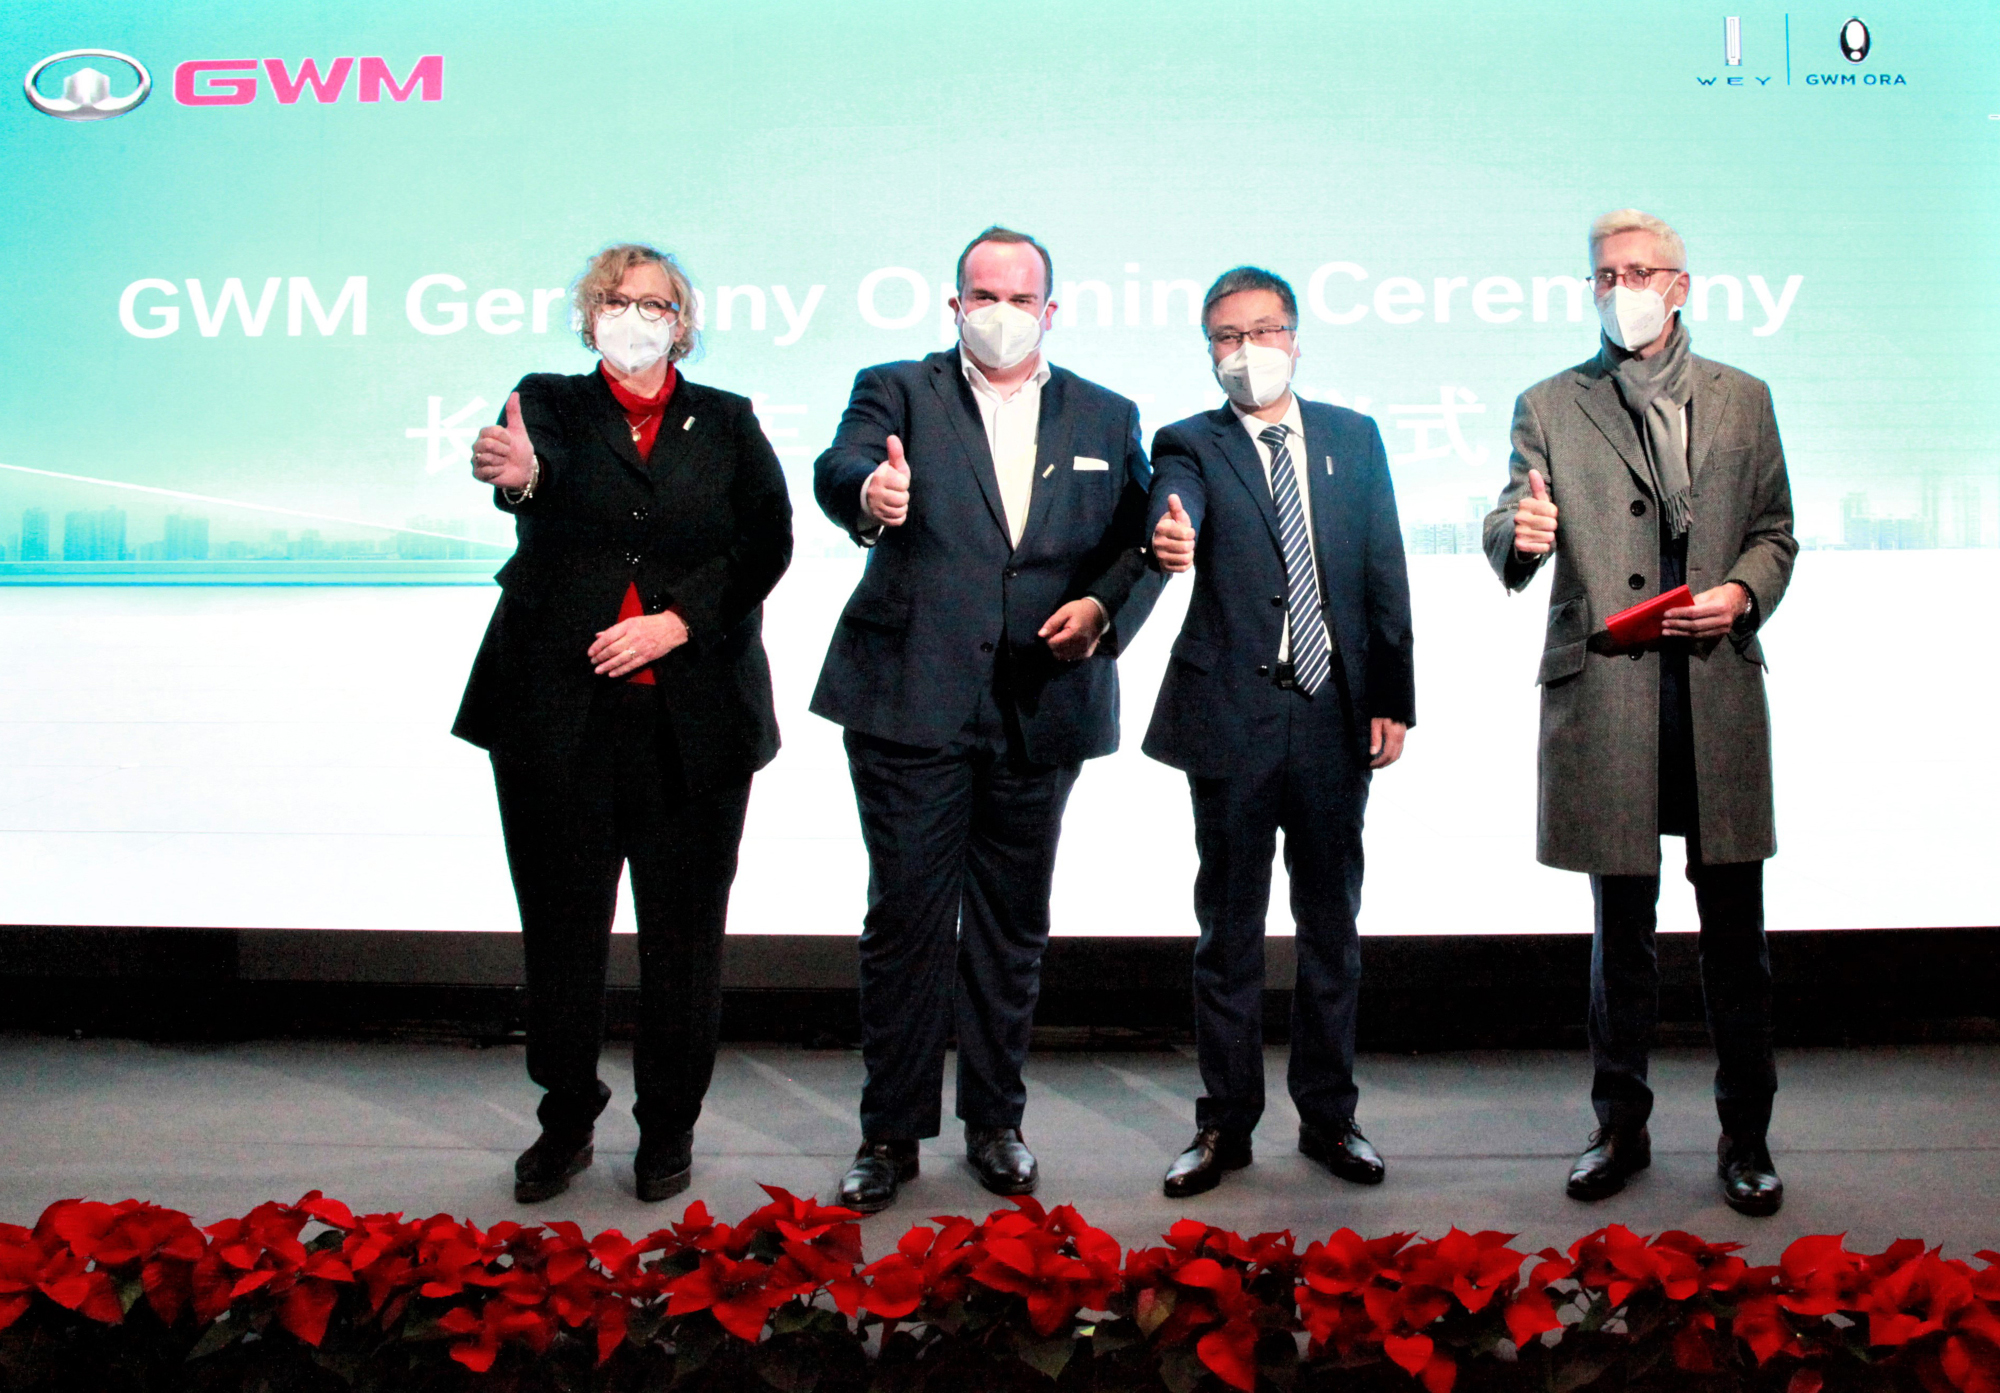 Eröffnung in München: Dr. Ulrike Wolf (Ministerialdirektorin Bayerisches Wirtschaftsministerium), Clemens Baumgärtner (Wirtschaftsreferent München), Xianghua Qiao (CEO GWM Europe), Bernd Riedel (BMW AG) (Foto: GWM)